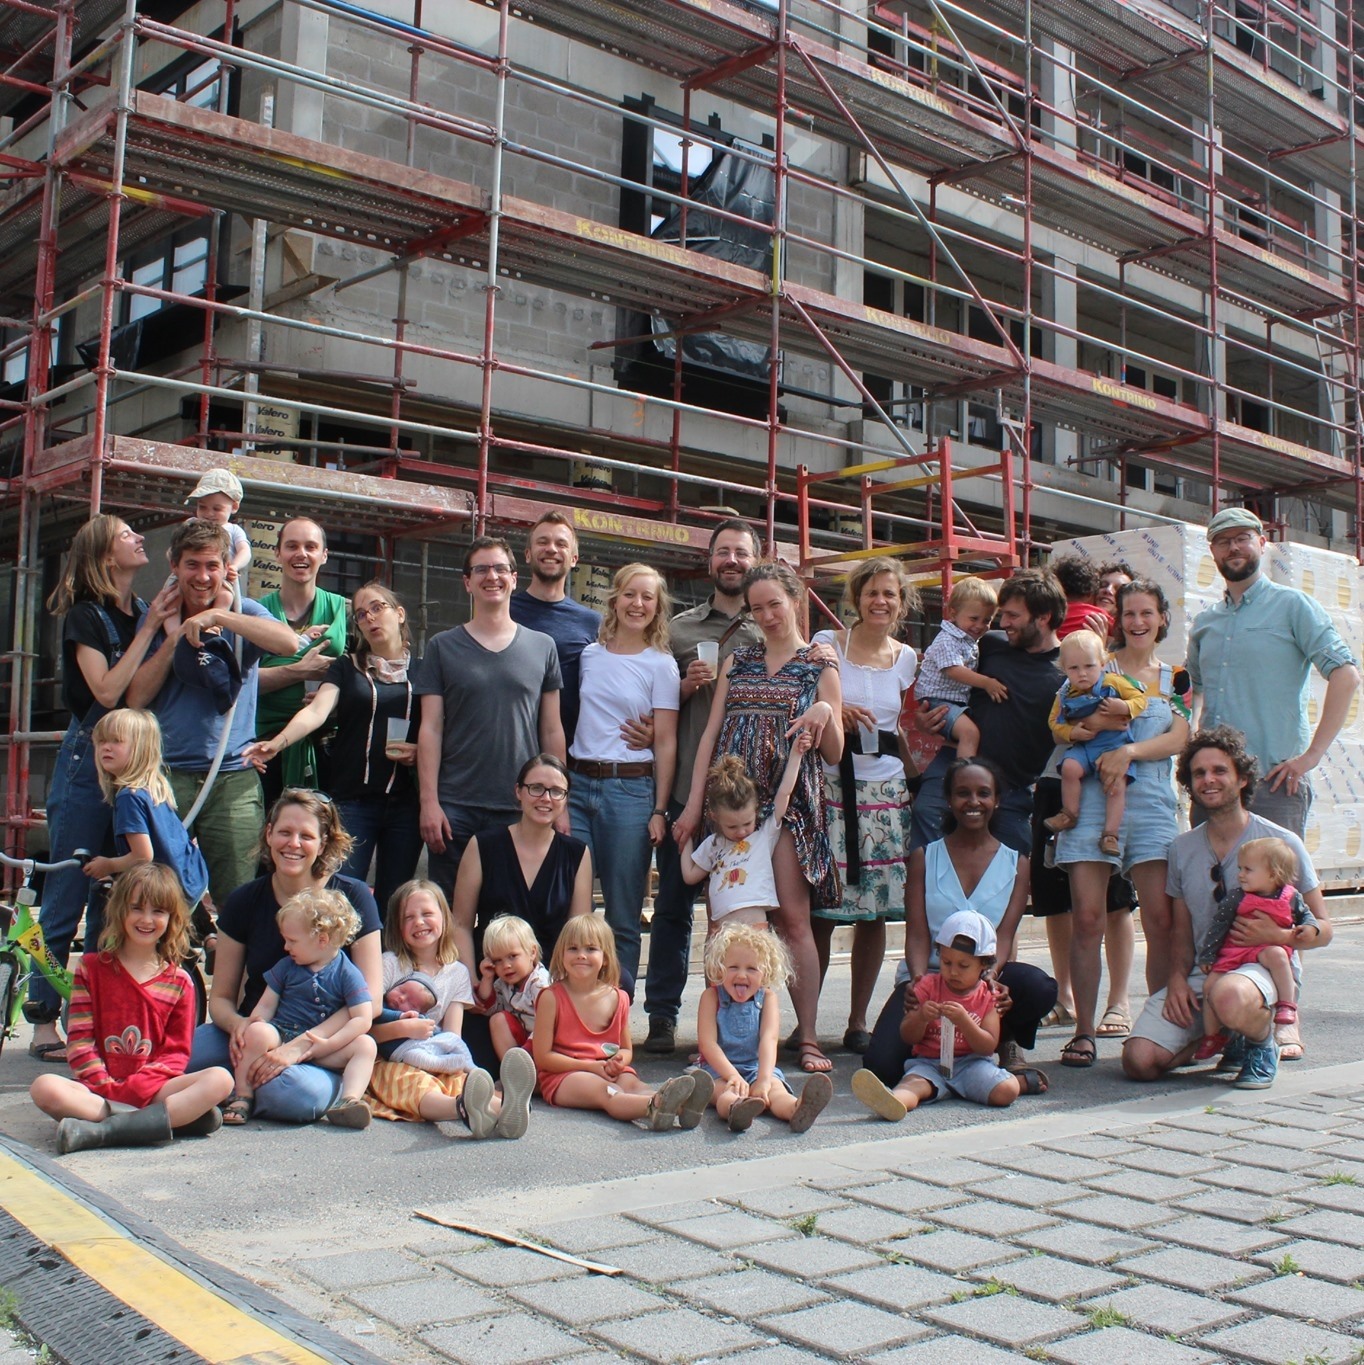 La Fondation Habitat Groupé Tivoli est un habitat groupé formé par 9 familles désireuses de vivre autrement à Bruxelles. Ces familles vivent joyeusement, dans un magnifique bâtiment pensé pour le vivre-ensemble, au sein du quartier durable Tivoli à deux pas de Tour & Taxis